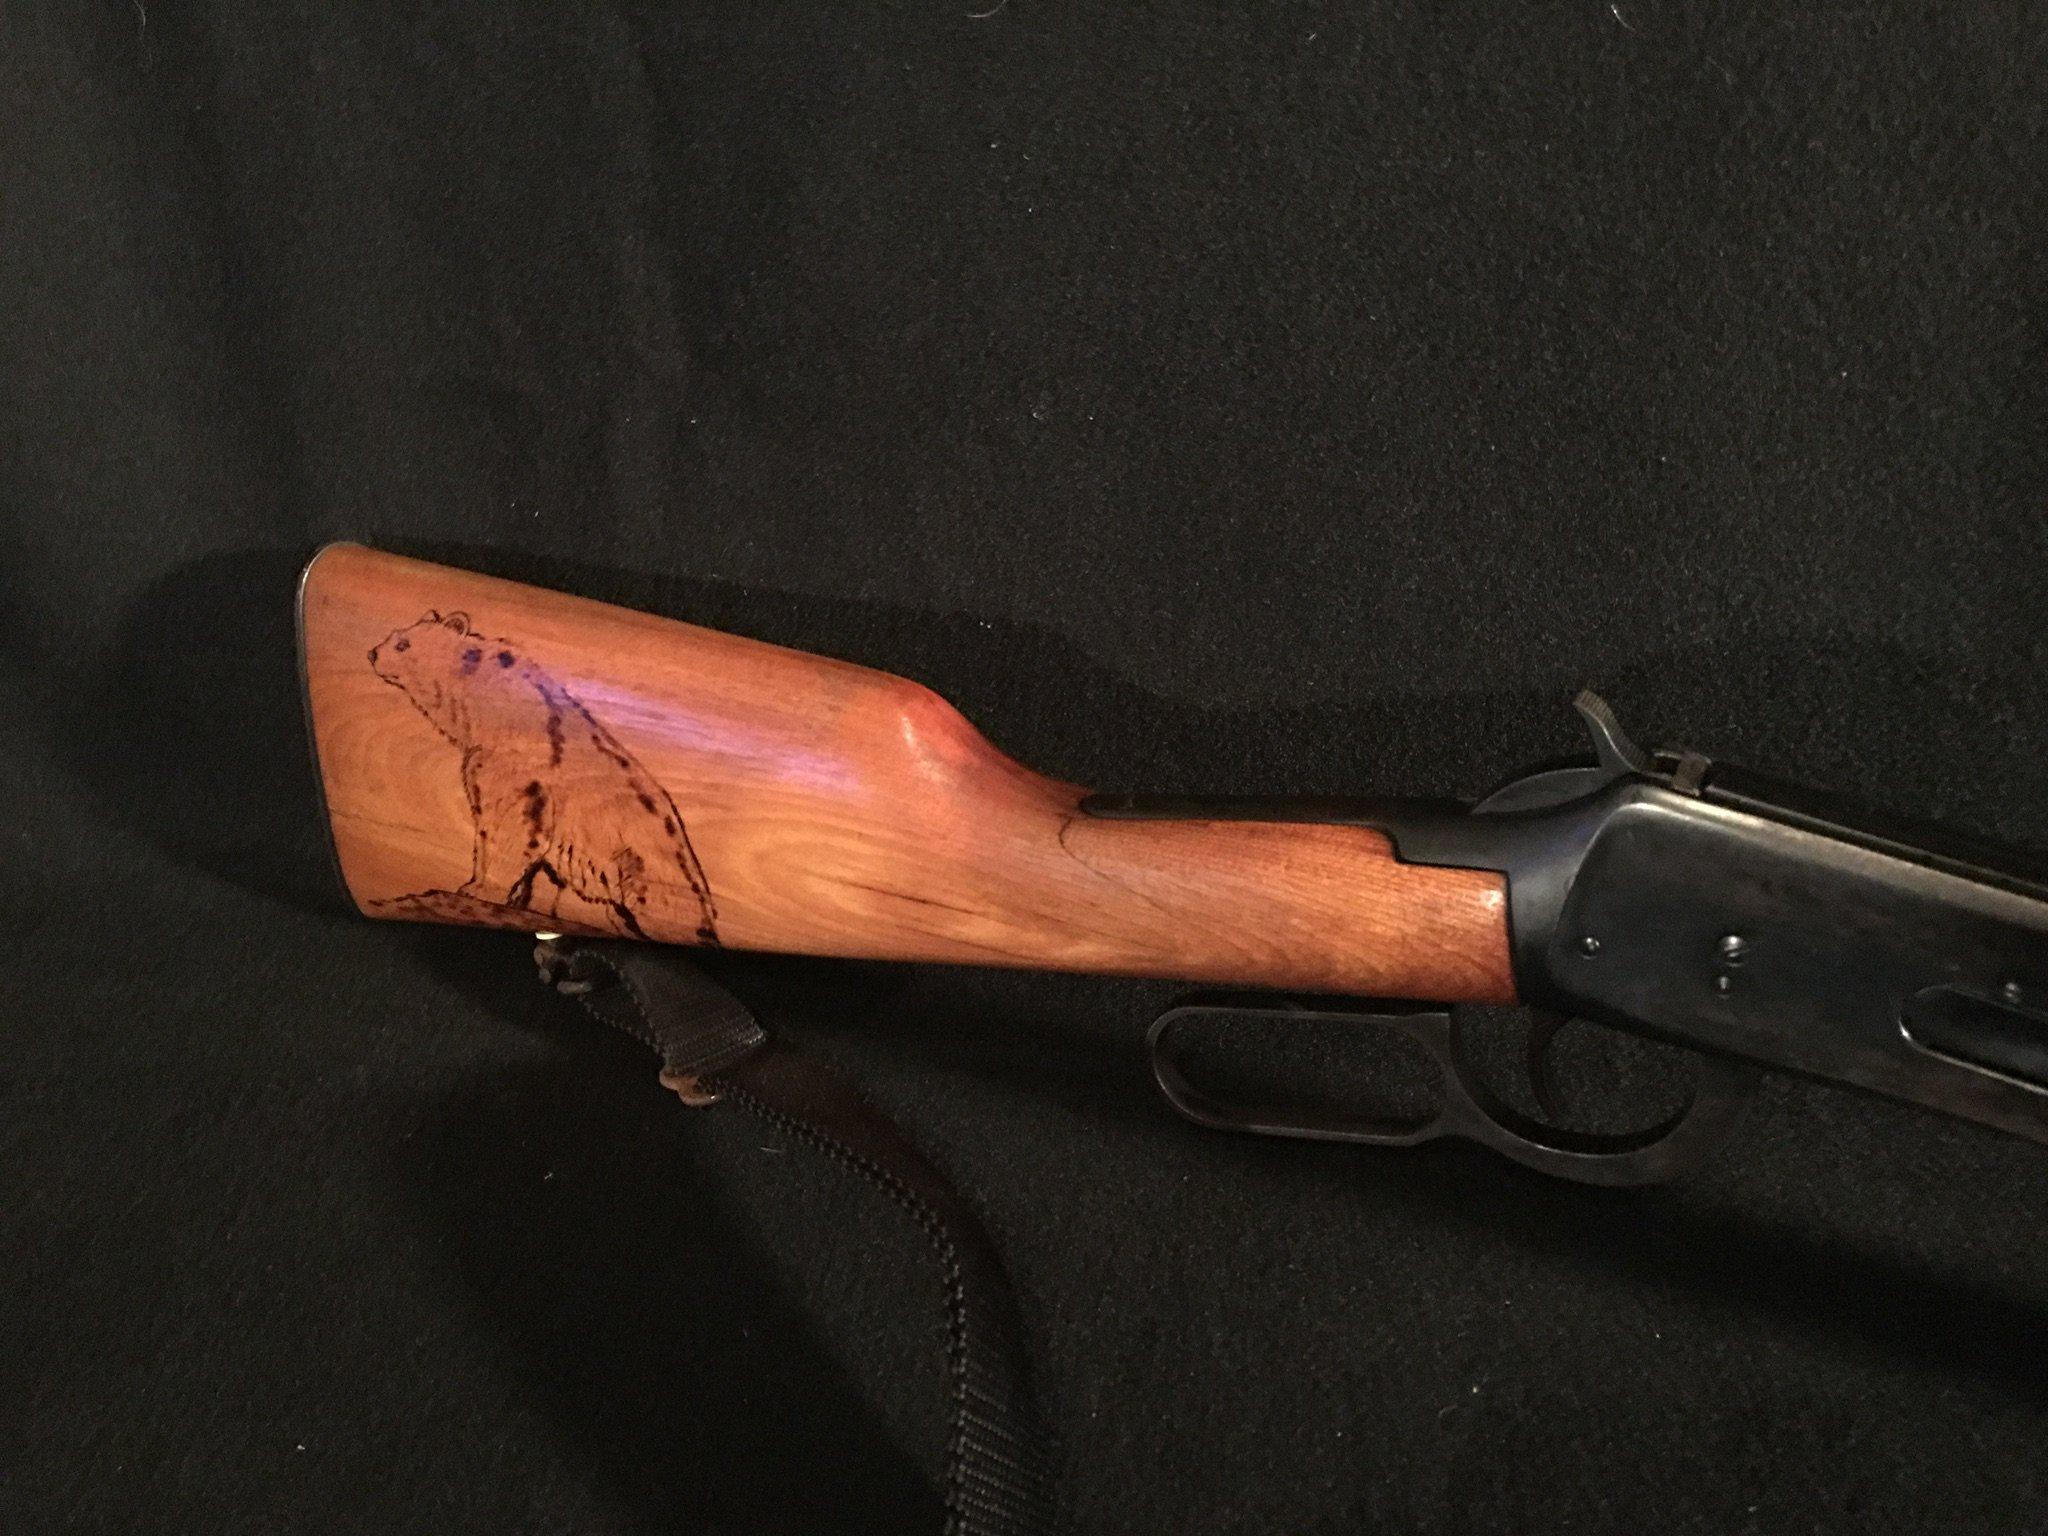 Winchester 94 30/30 WIN